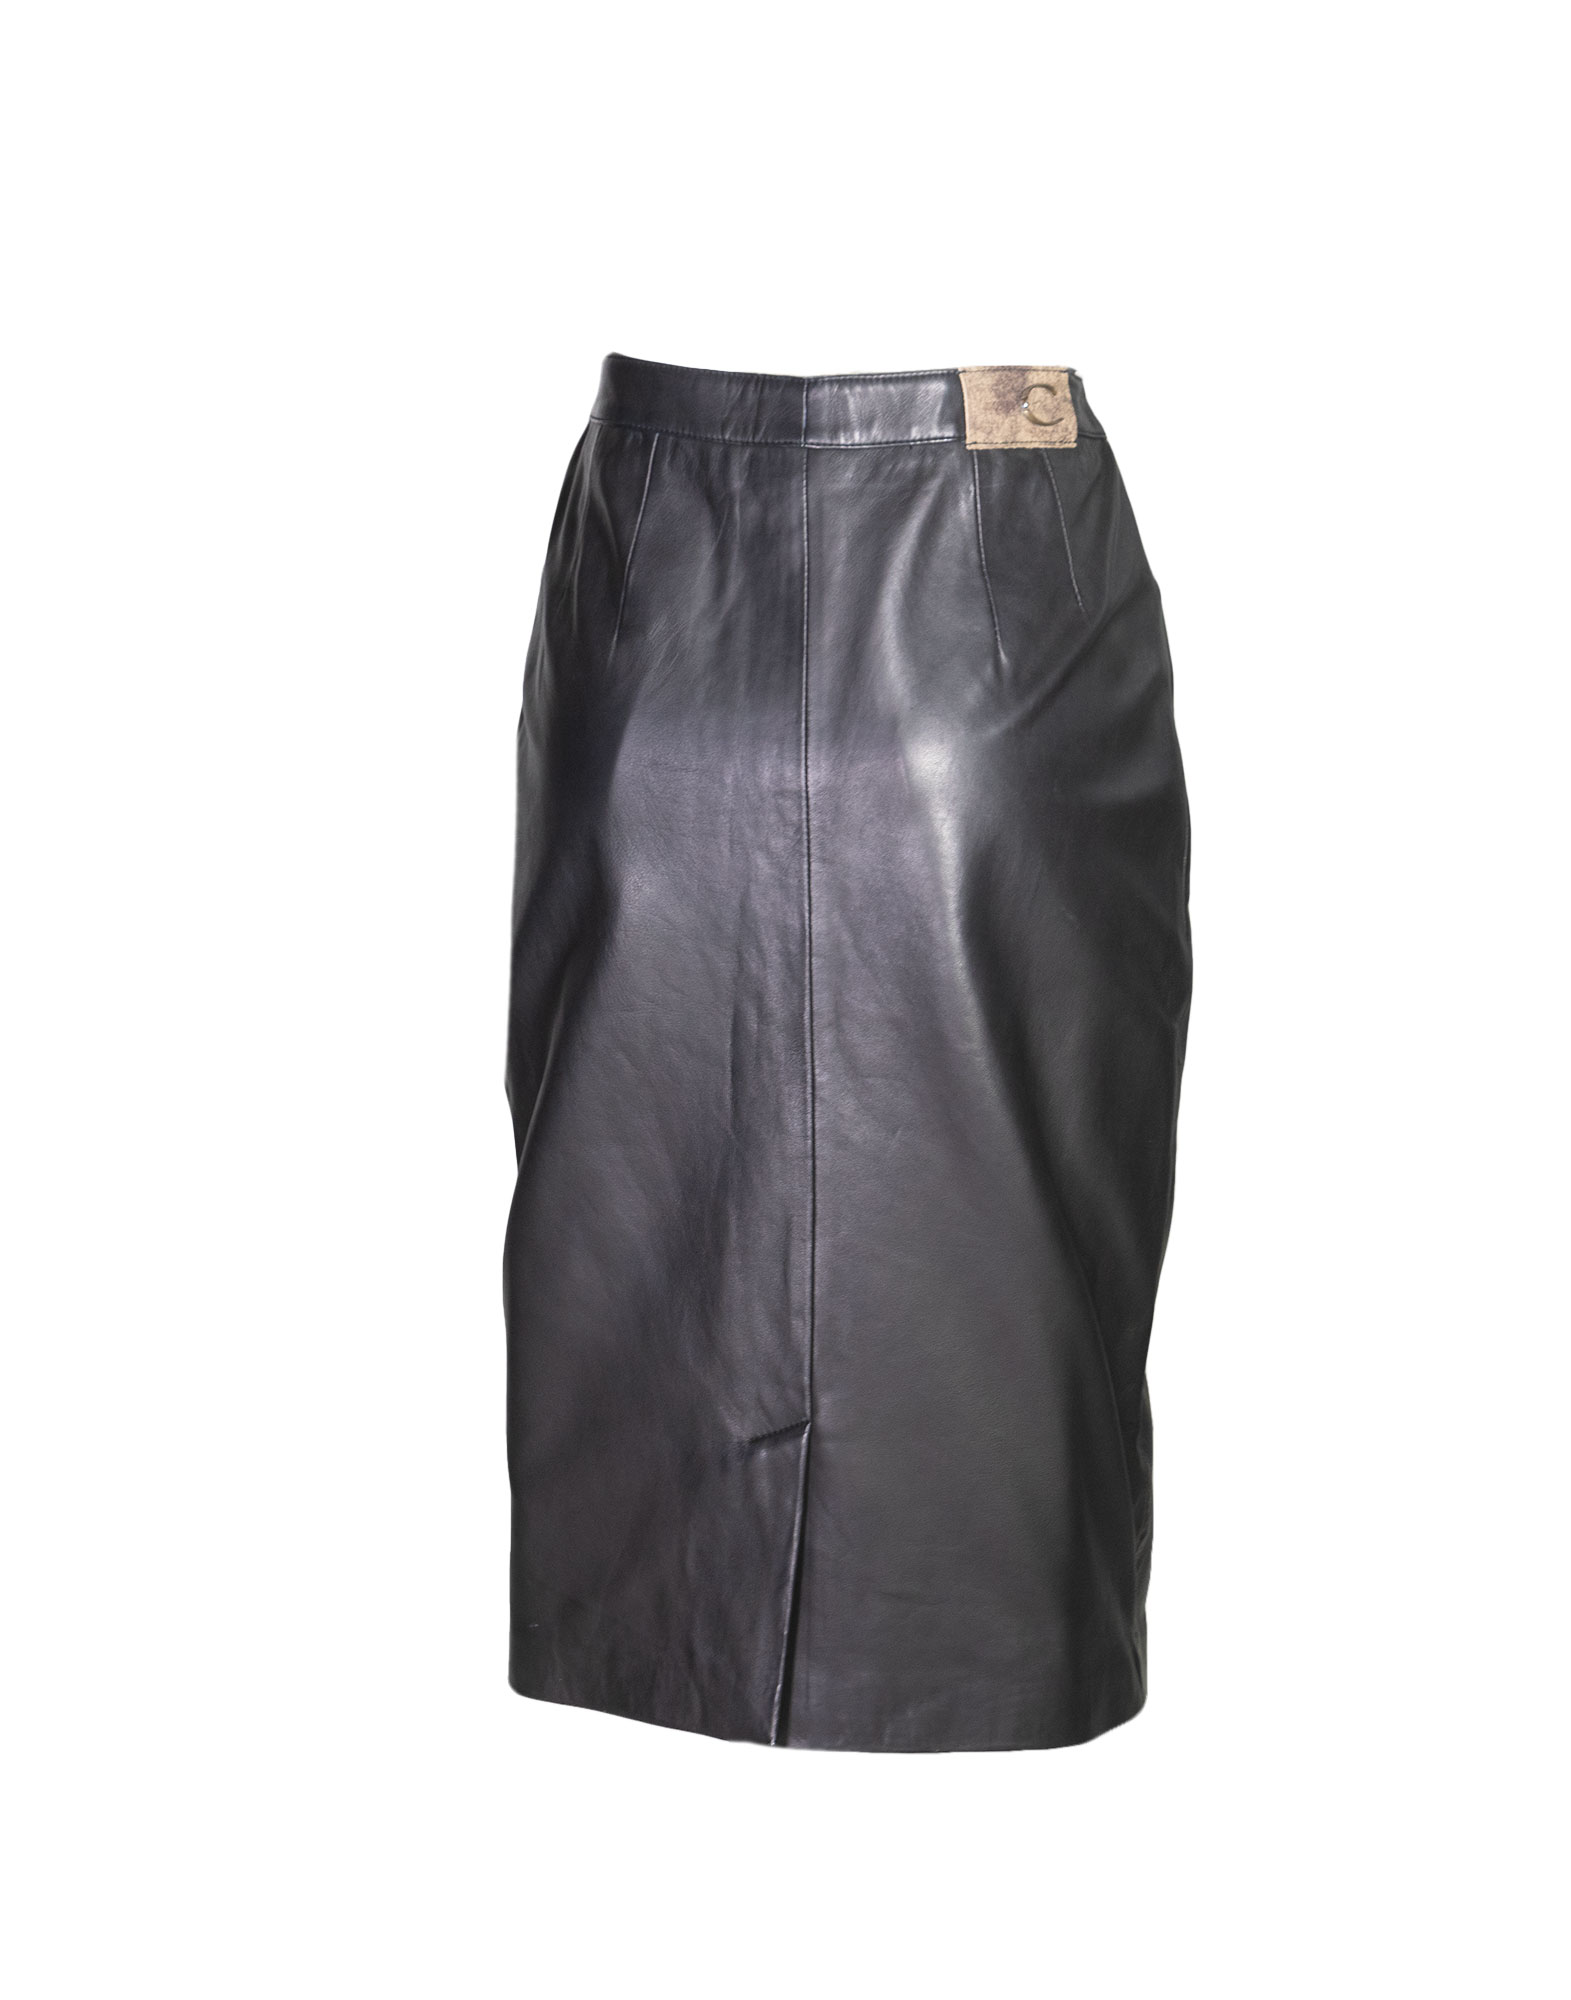 Just Cavalli - 100% Leather pencil skirt